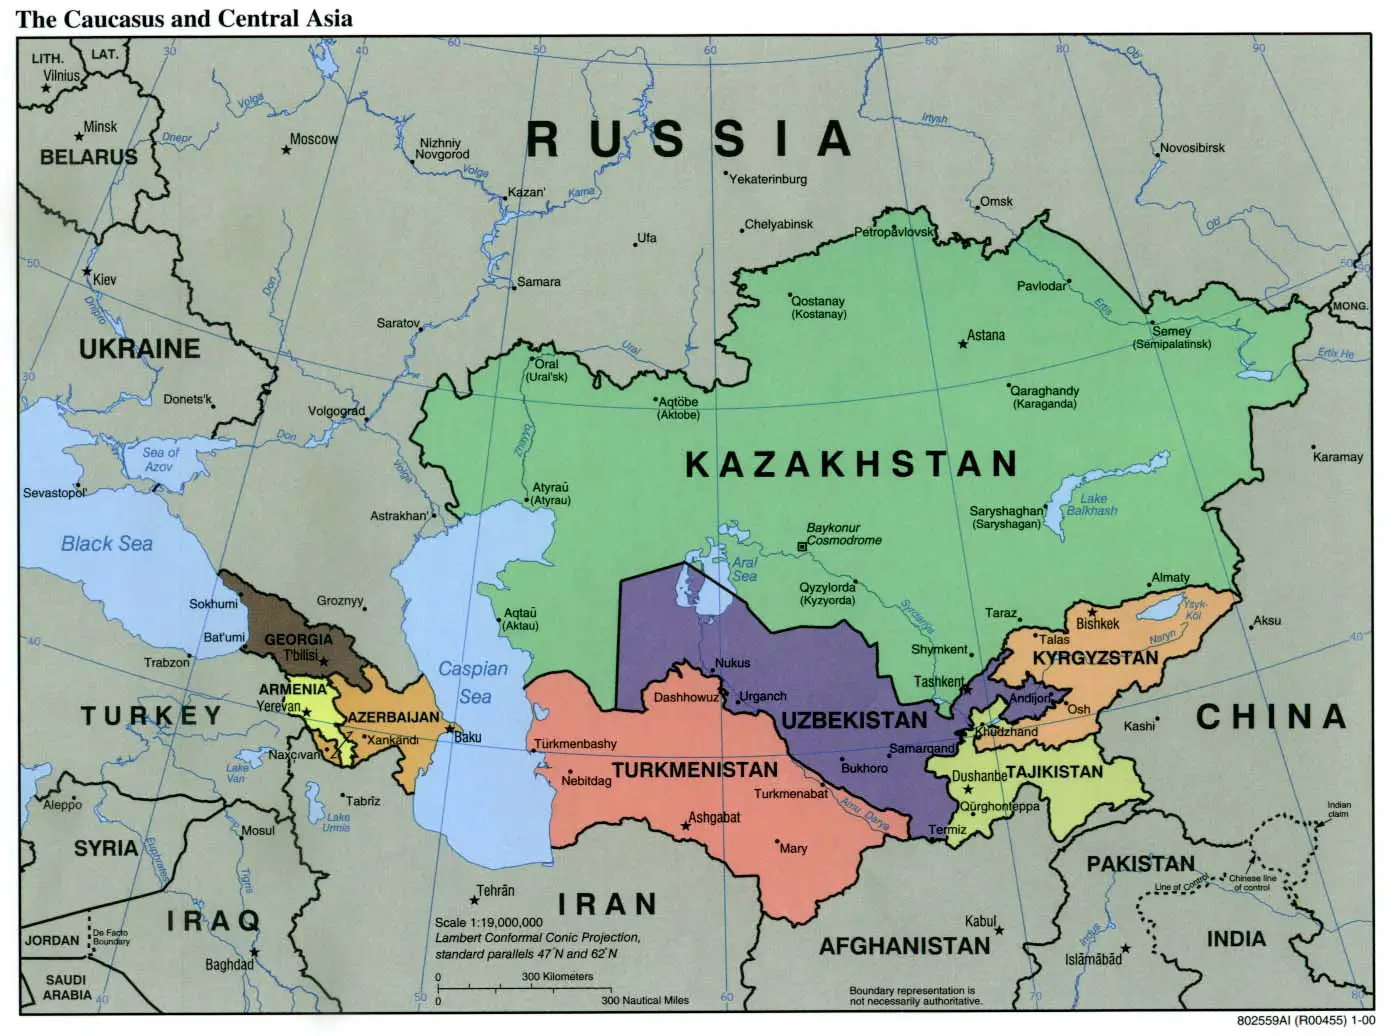 Caucasus Central Asia Political Map 2000 6